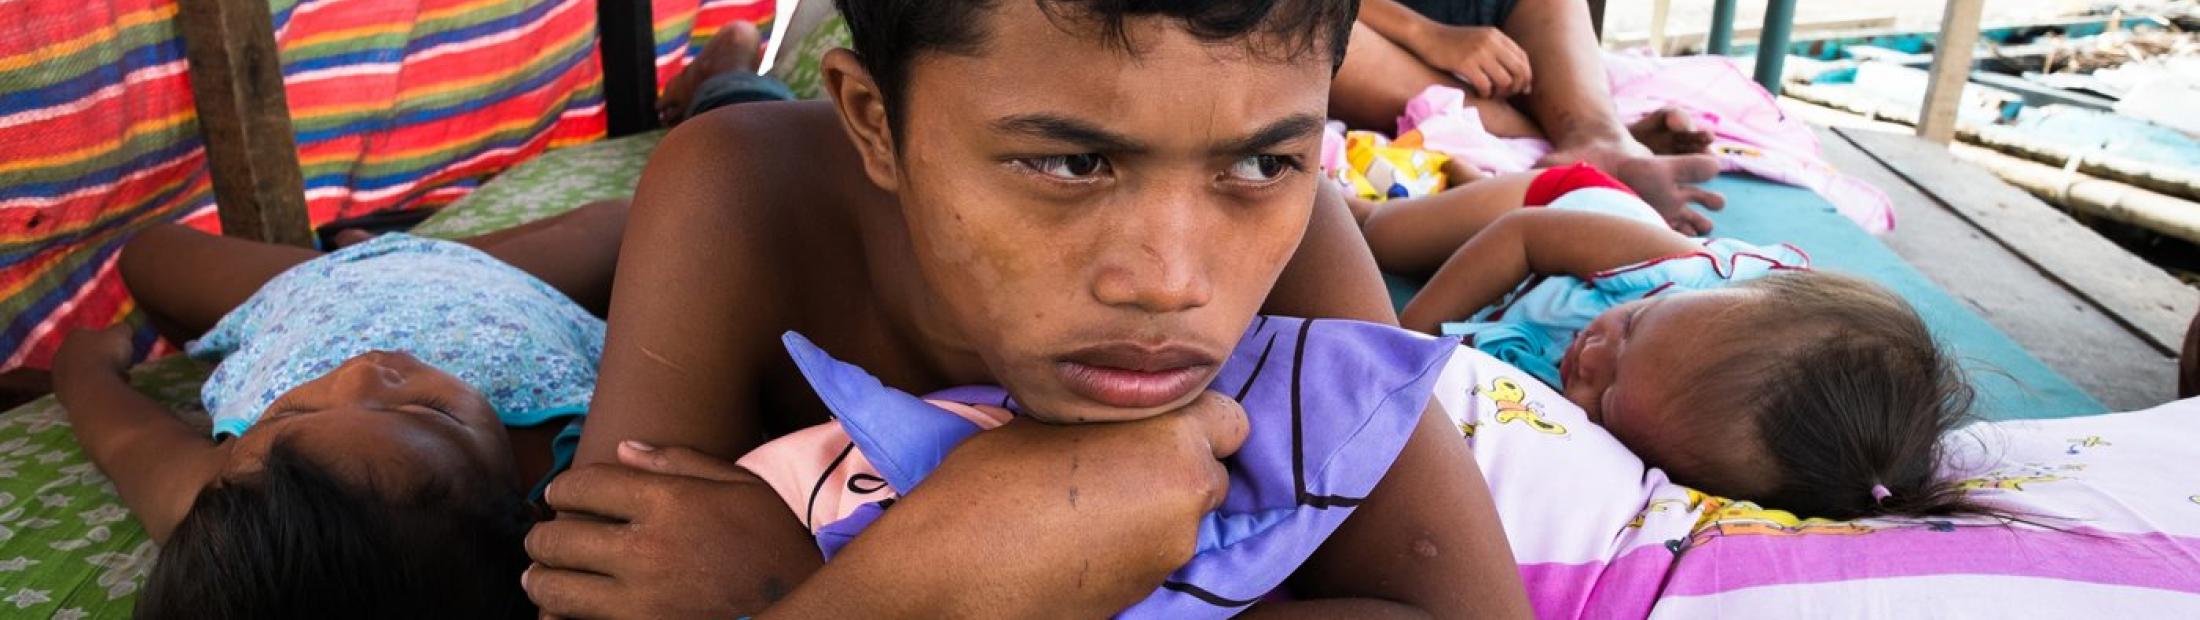 Aumenta la tensión y los traumas entre las víctimas tras el tifón en Filipinas